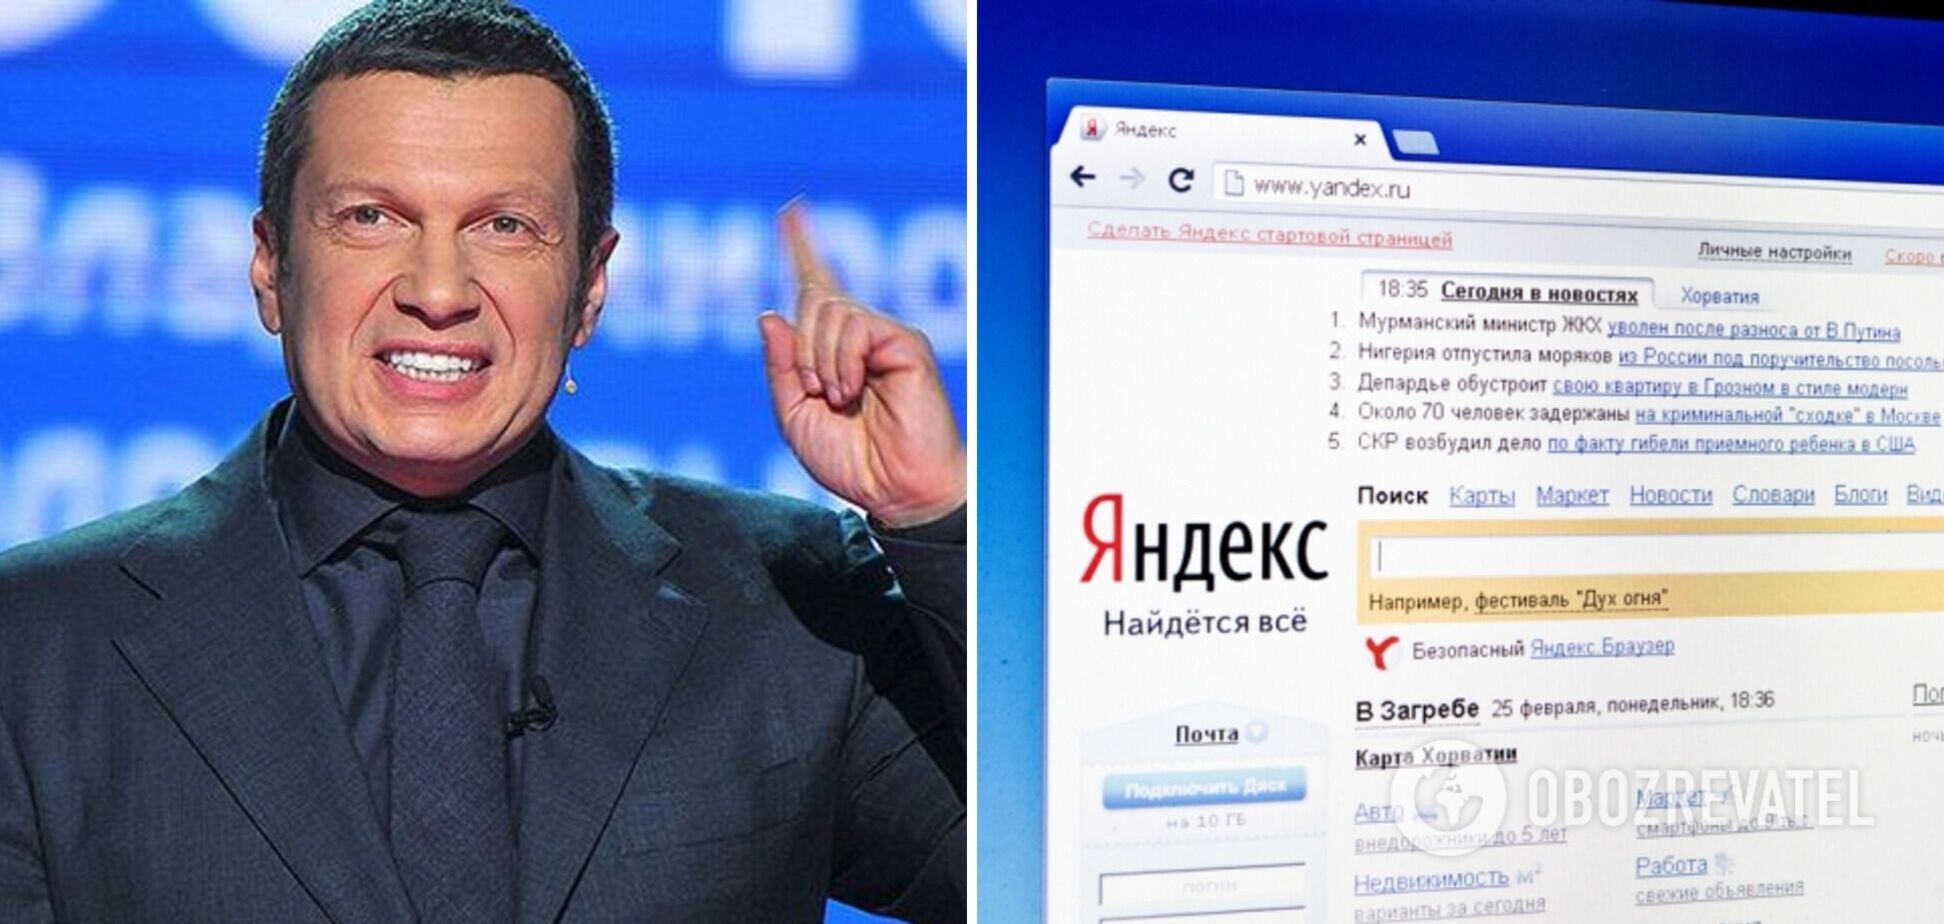 'Тварюки ви': Соловойов влаштував істерику через 'ярлик', який дав йому пошуковик 'Яндекс'. Відео 